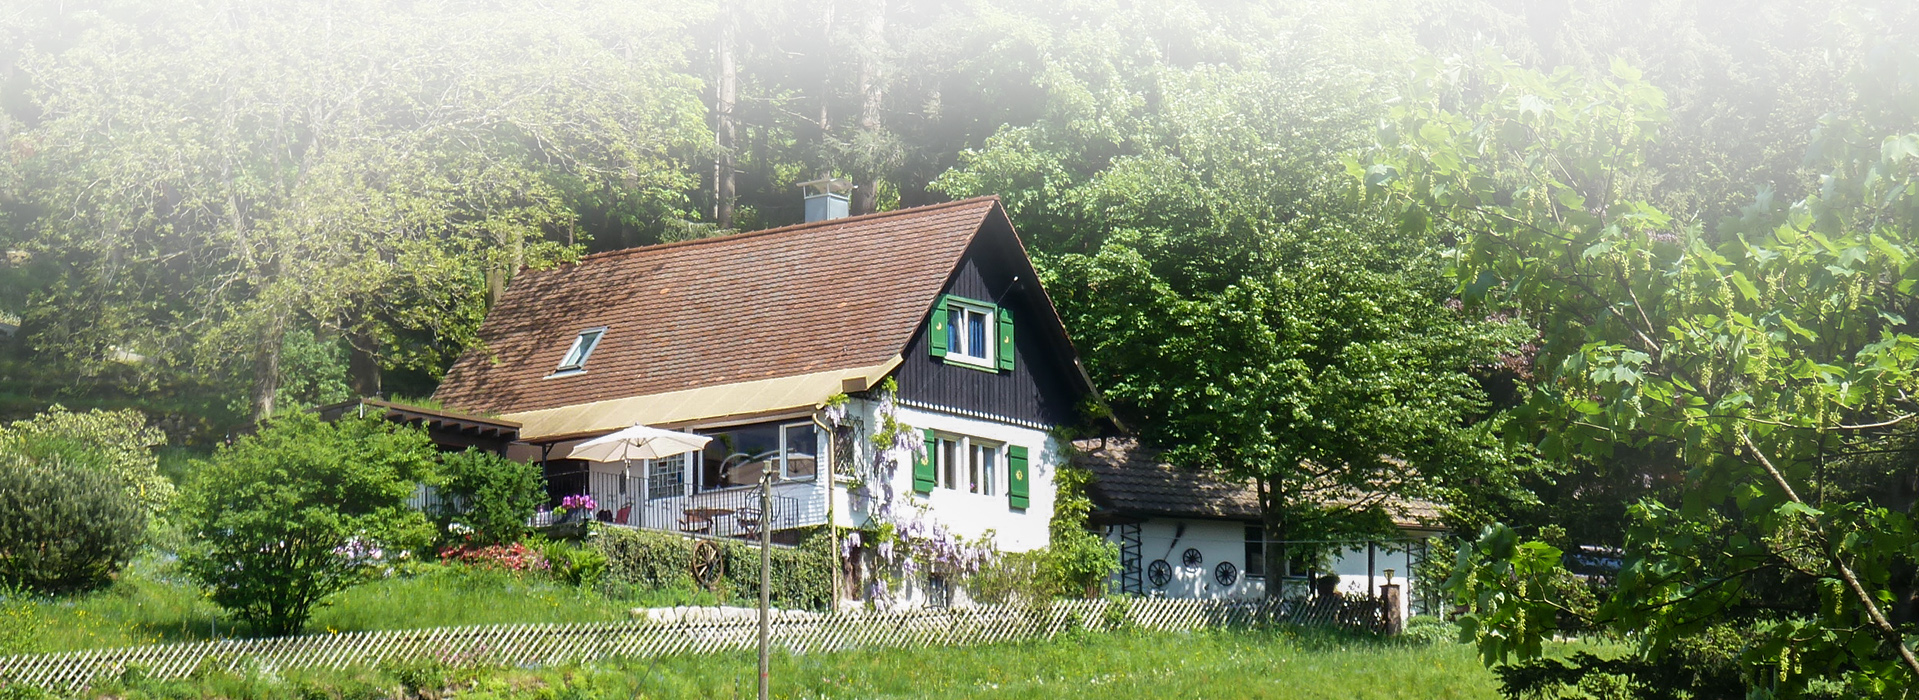 Ein großes, mehrstöckiges Haus mit grünen Fensterläden. An der Seite ist ein niederiger Anbau  zu erkennen. Am Haus ist auch ein großer Garten, der von einem Zaun eingefasst wird. Hinter dem Haus beginnt der Wald.